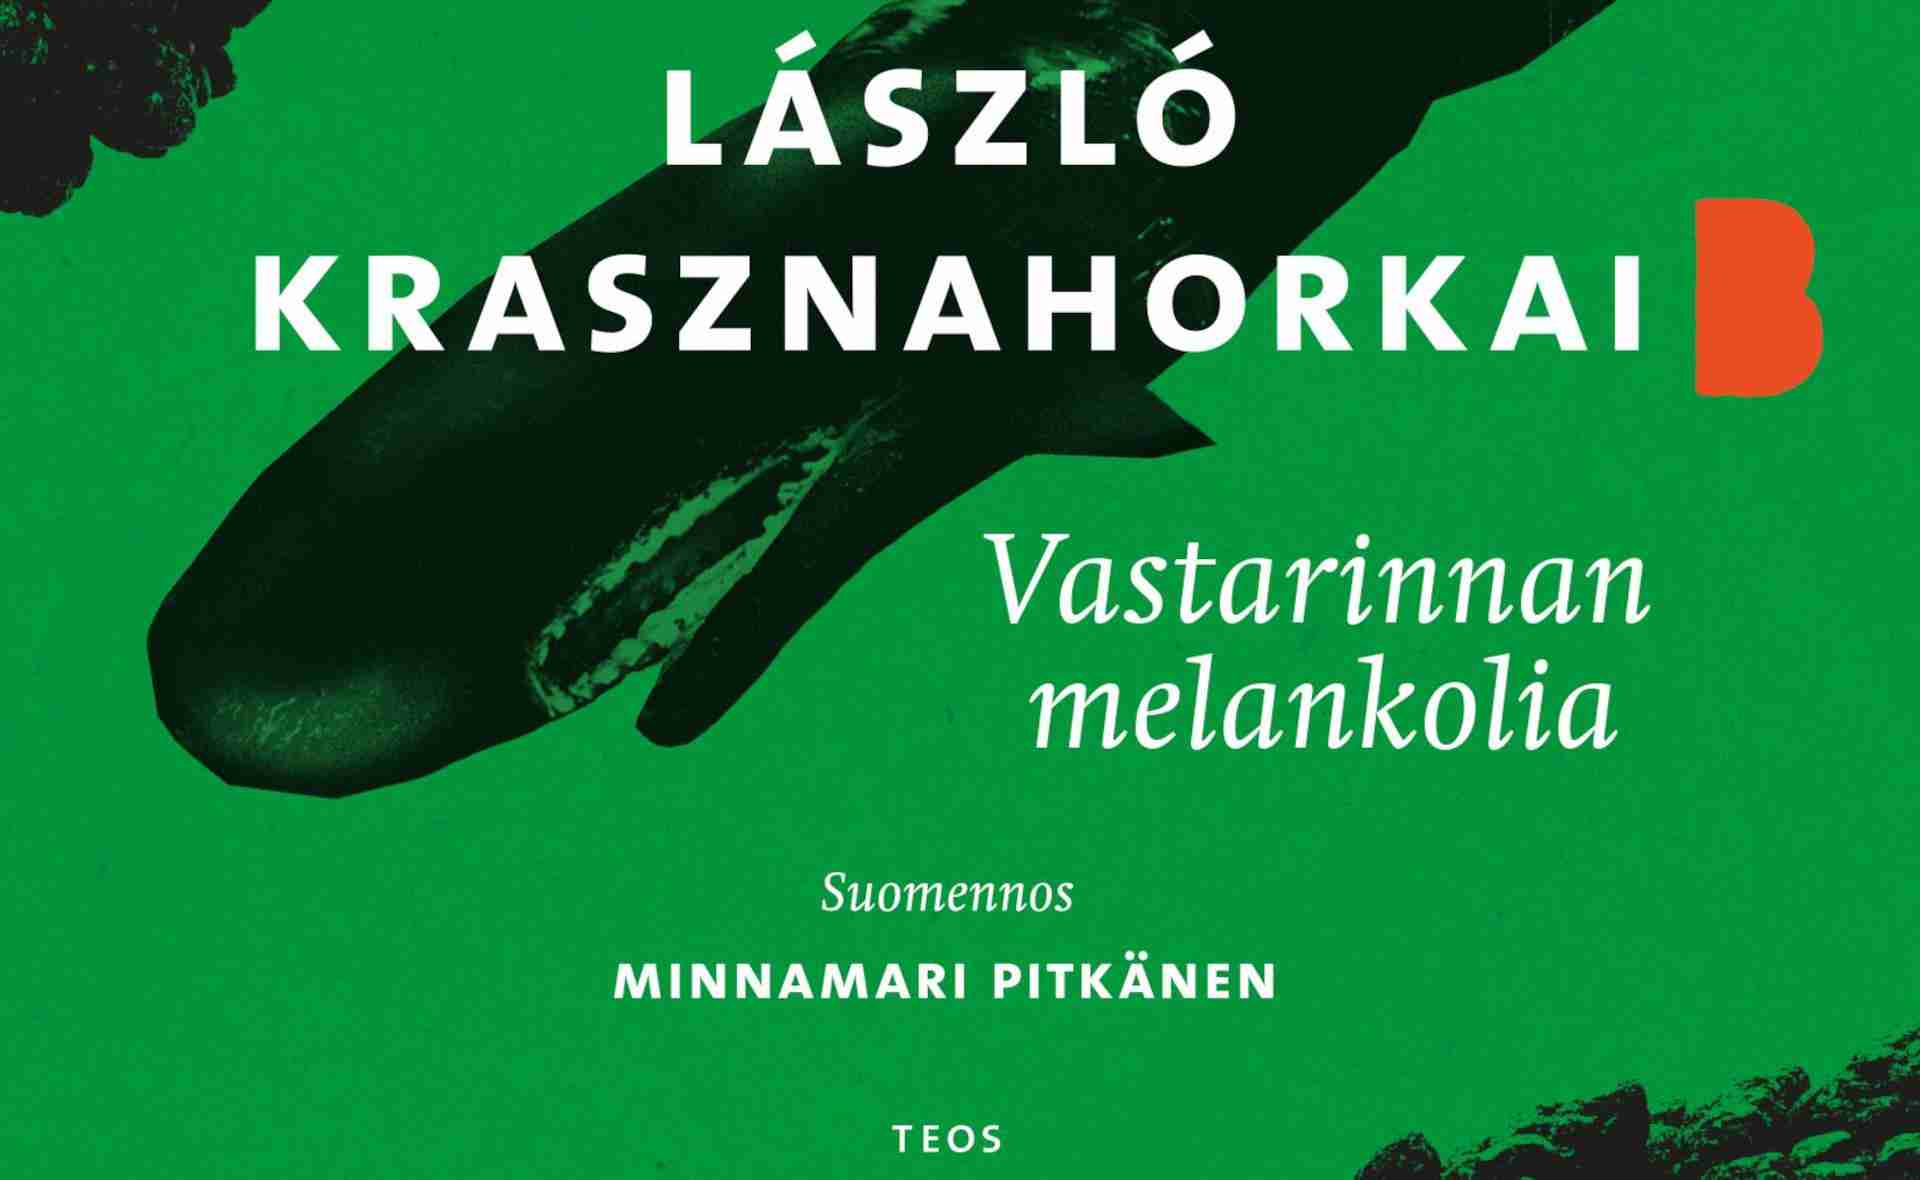 Megjelent Krasznahorkai László Az ellenállás melankóliája c. műve Minnamari Pitkänen műfordításában